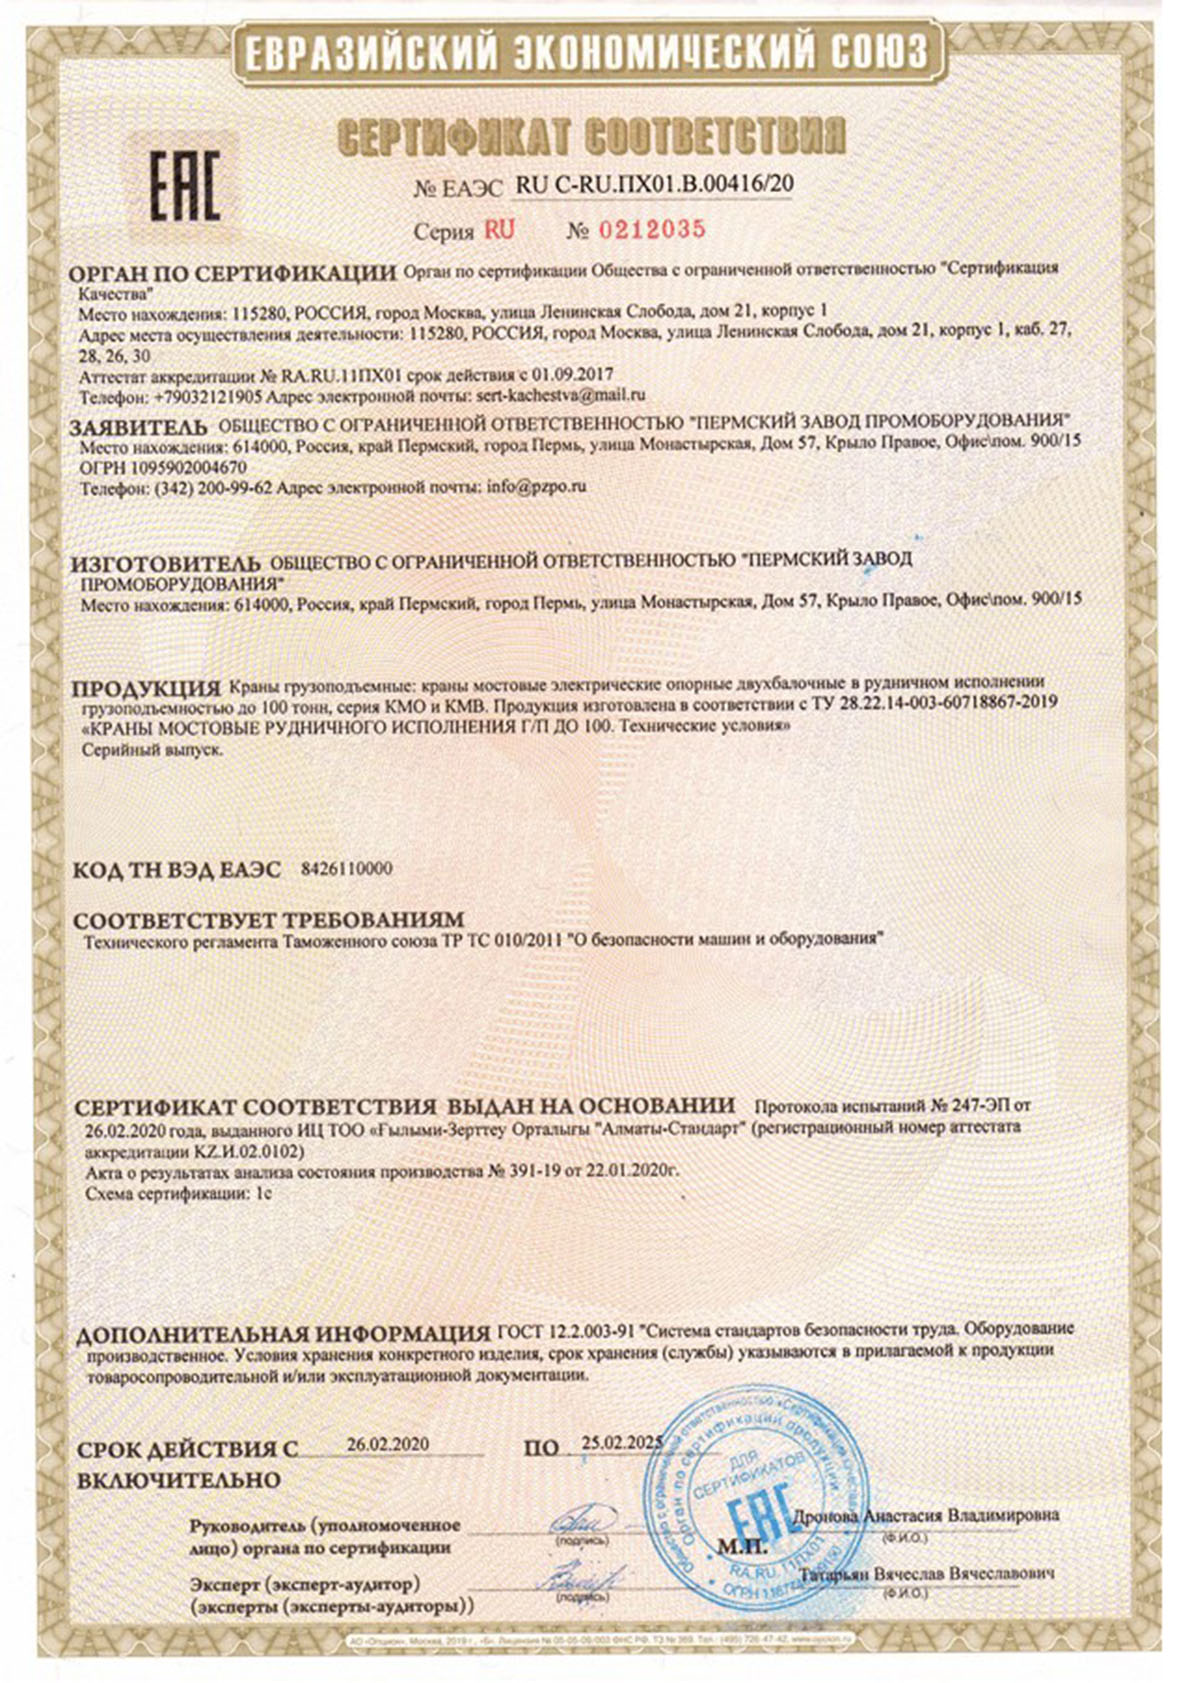 Сертификат соответствия мостовых двухбалочных кранов в рудничном исполнении грузоподъемностью до 100 тонн